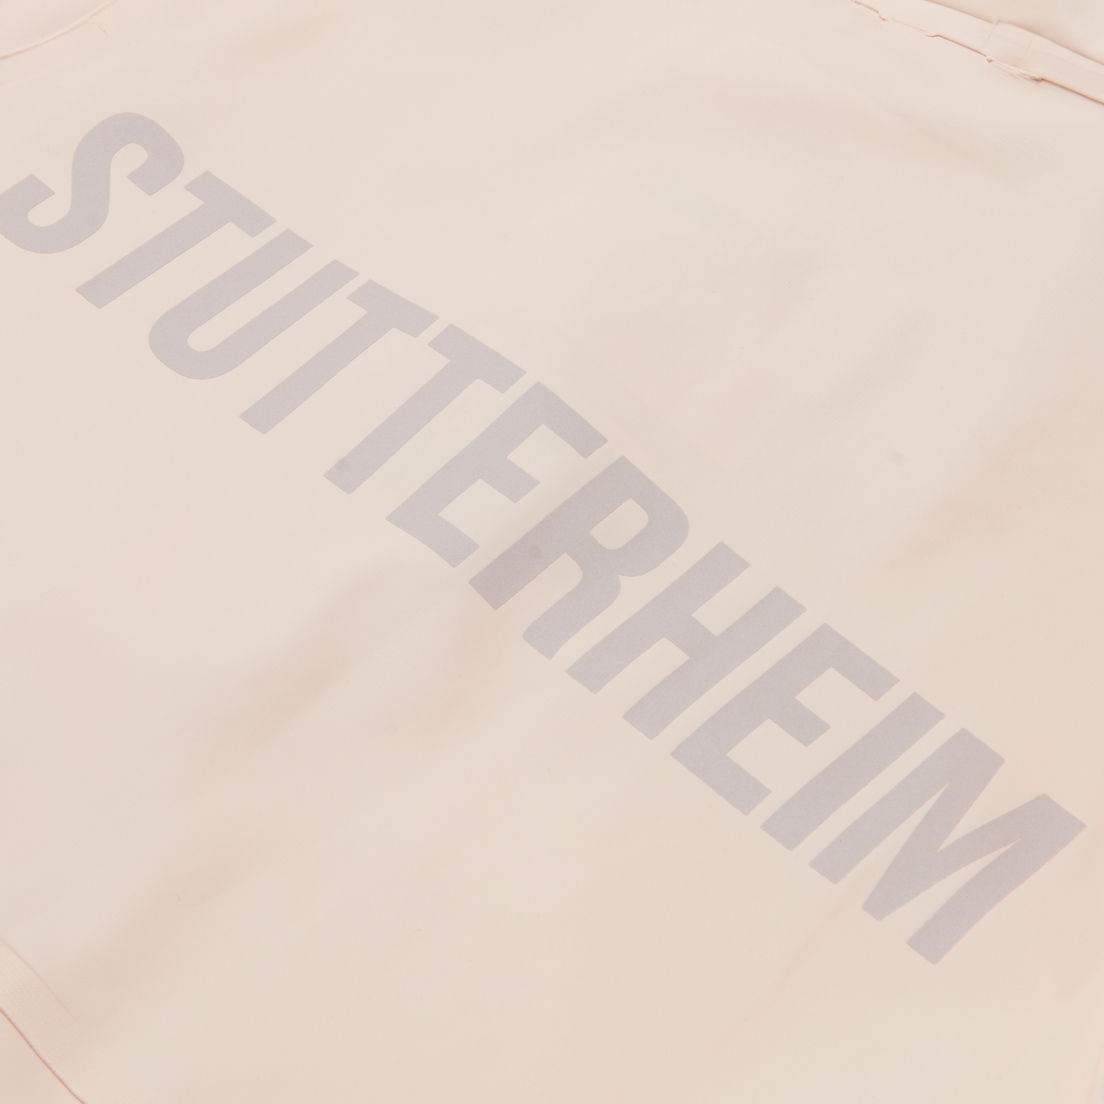 Stutterheim Женская куртка дождевик Mosebacke Long Print